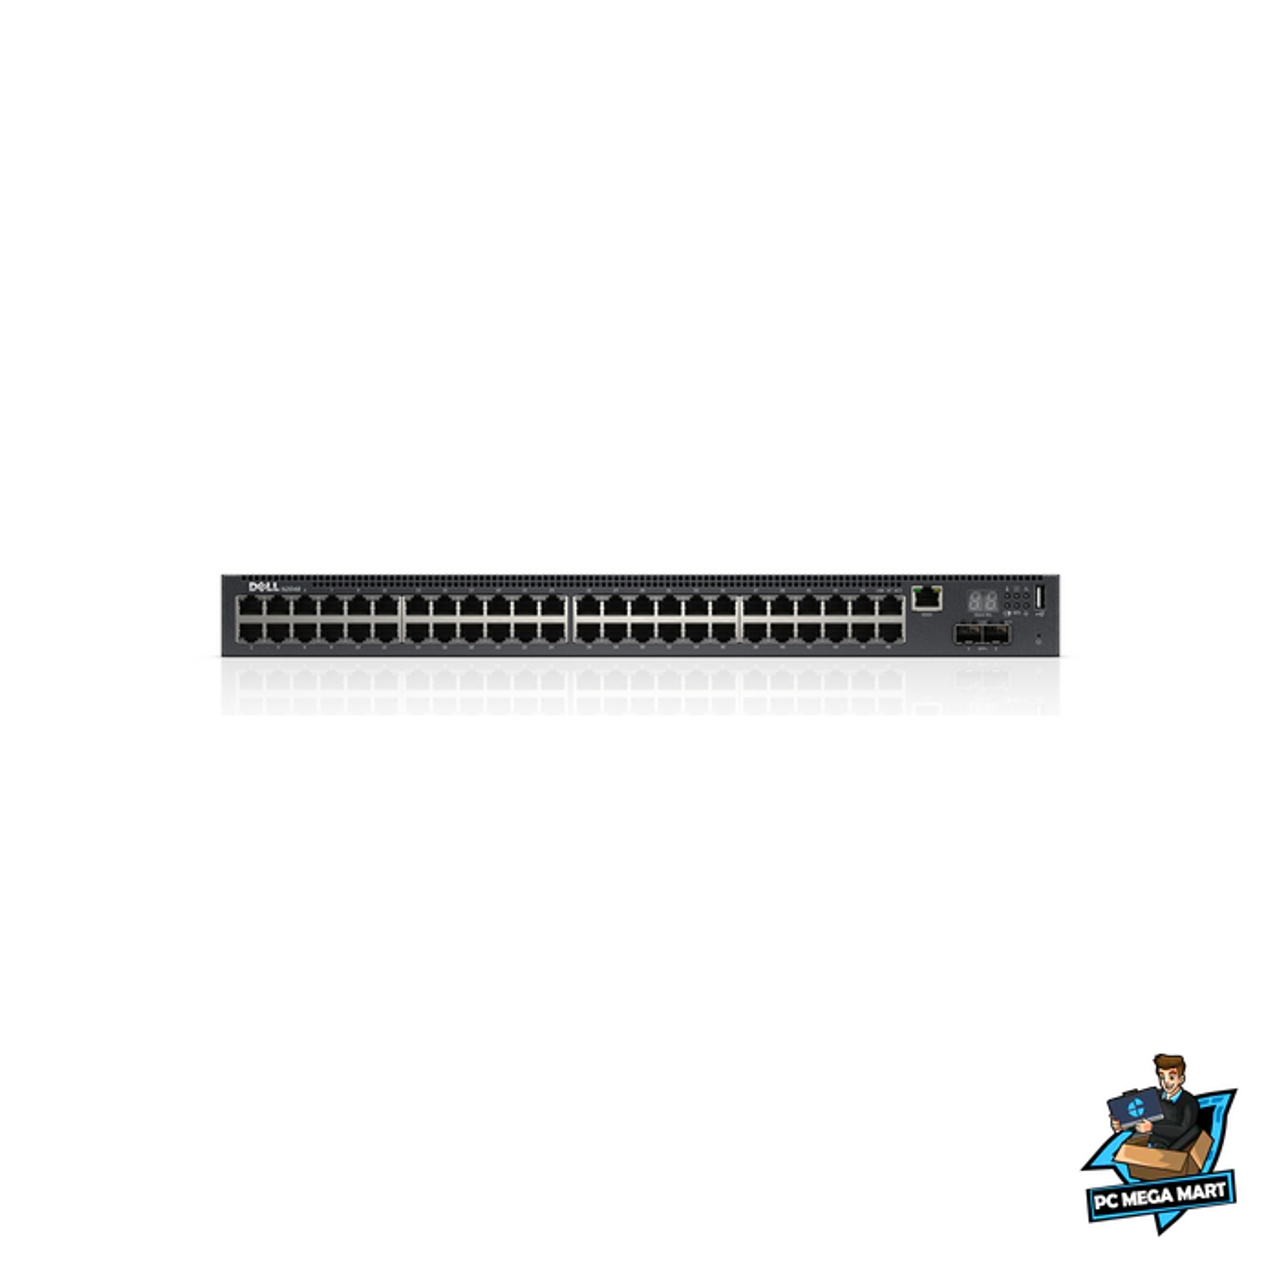 DELL PowerConnect N2048 Managed L3 Gigabit Ethernet (10 100 1000) Black 1U 1